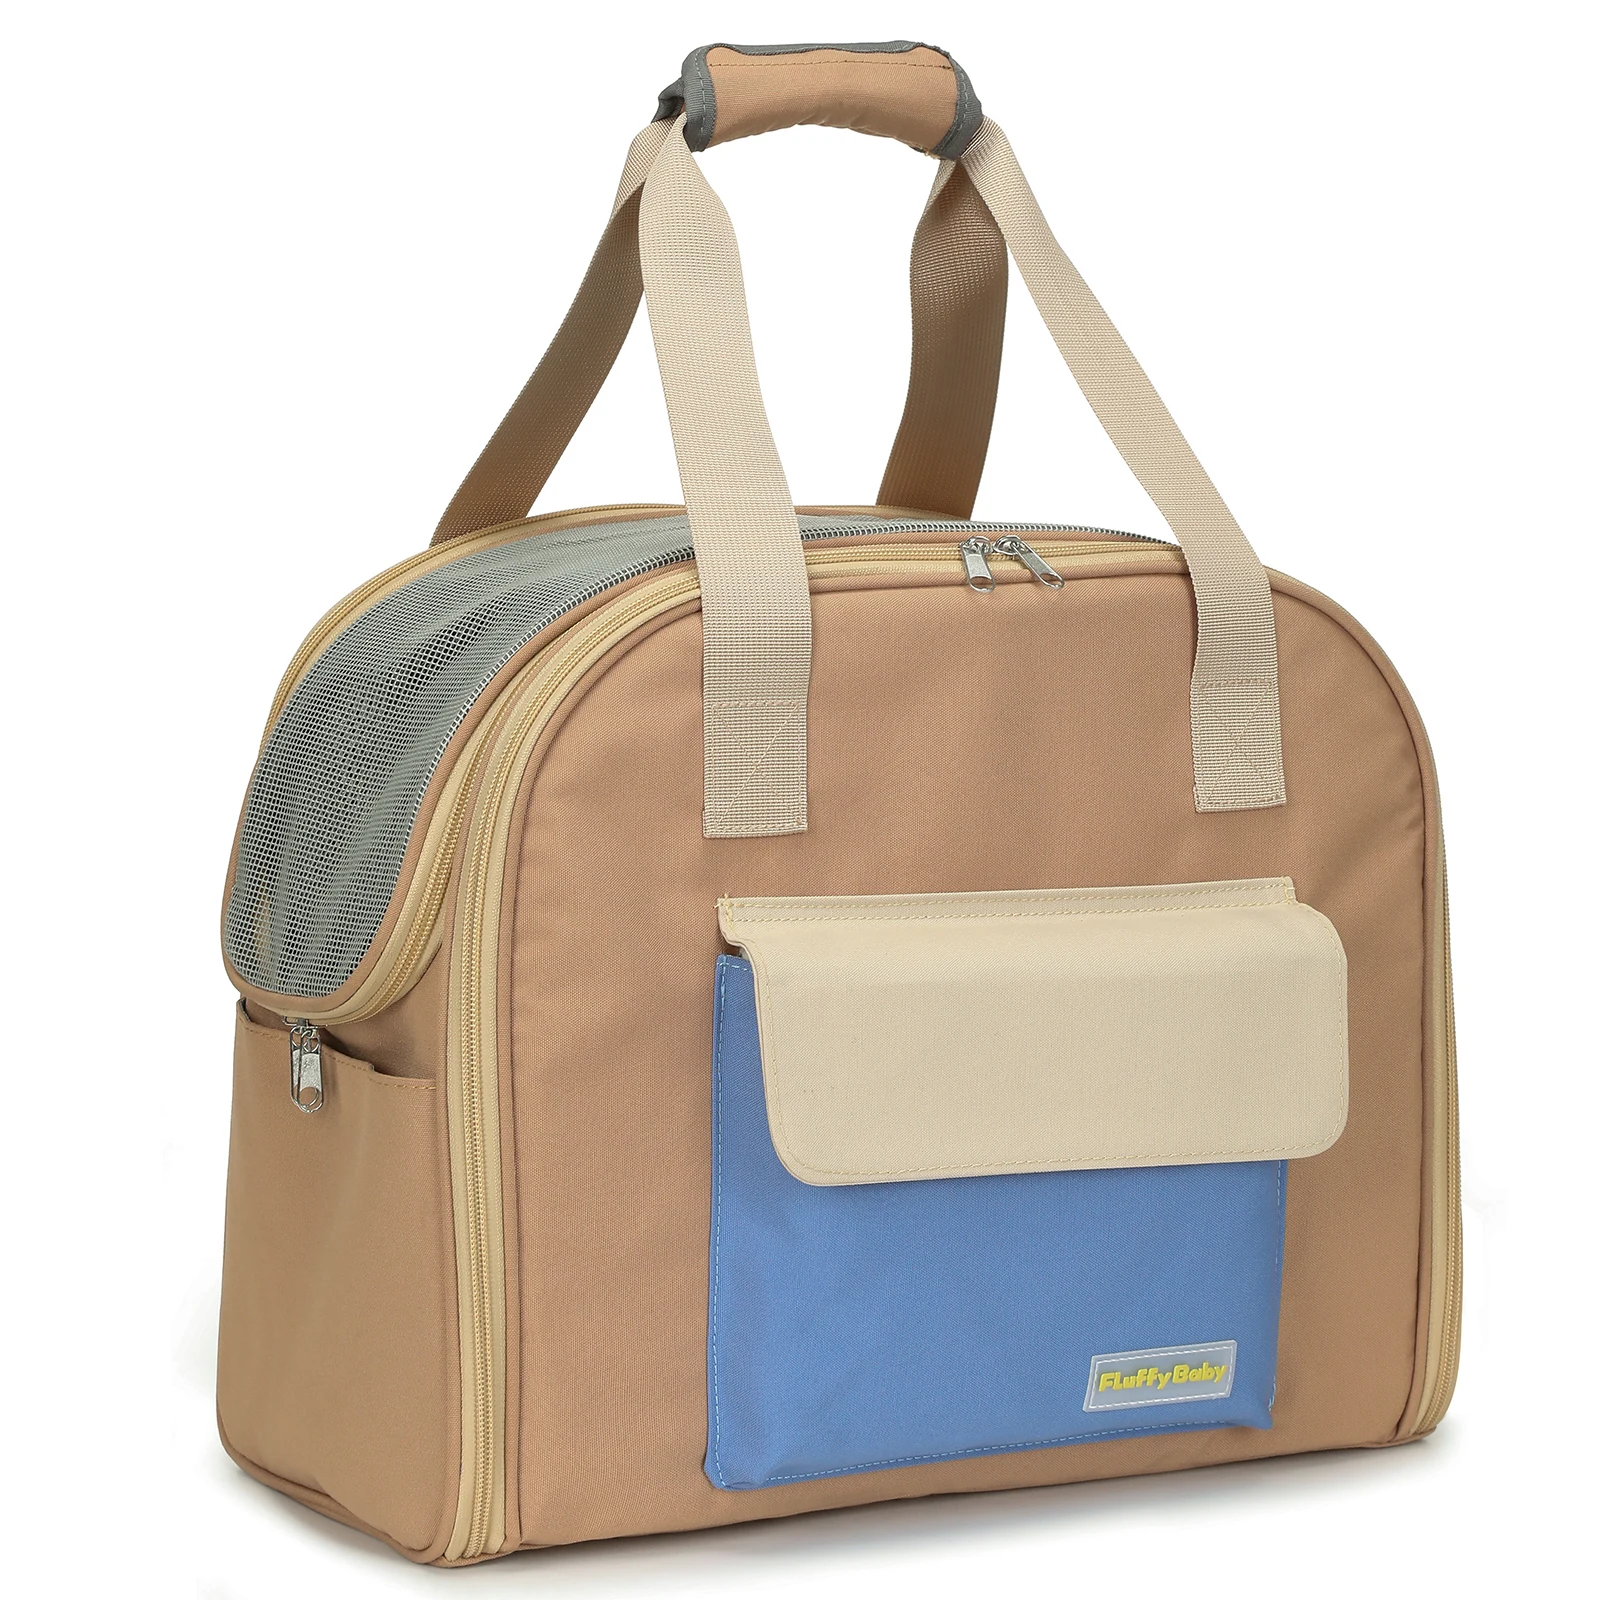 

Pet handbag backpack Teddy bag aviation bag pet camping bag Korean popular pet bag wholesale